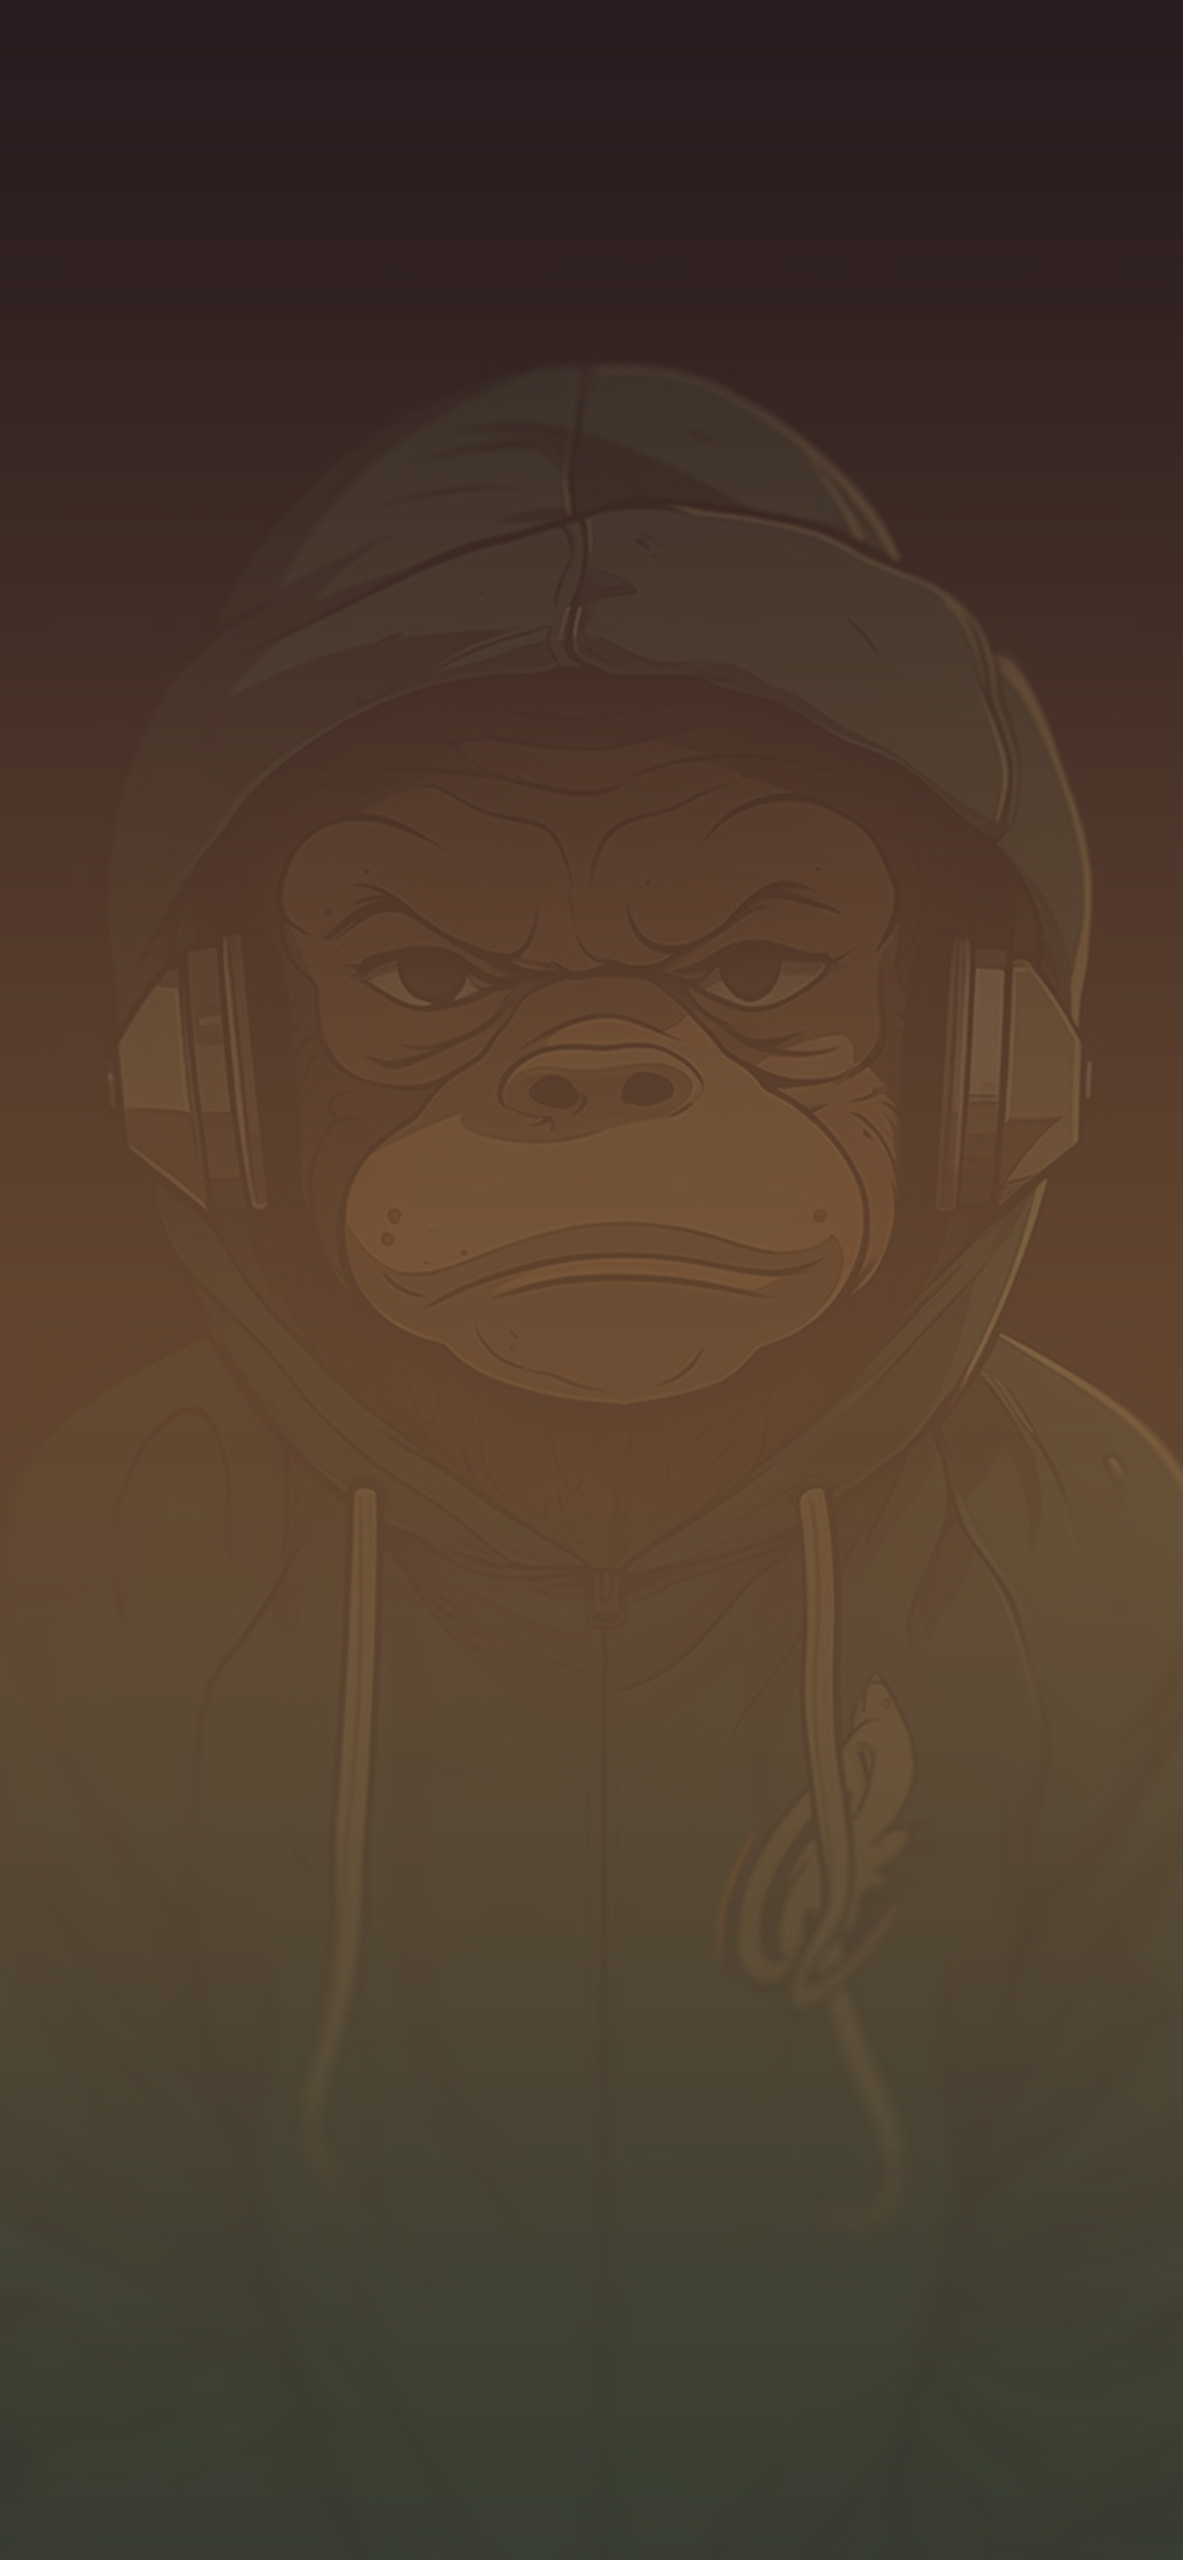 monkey in hoodie brown background